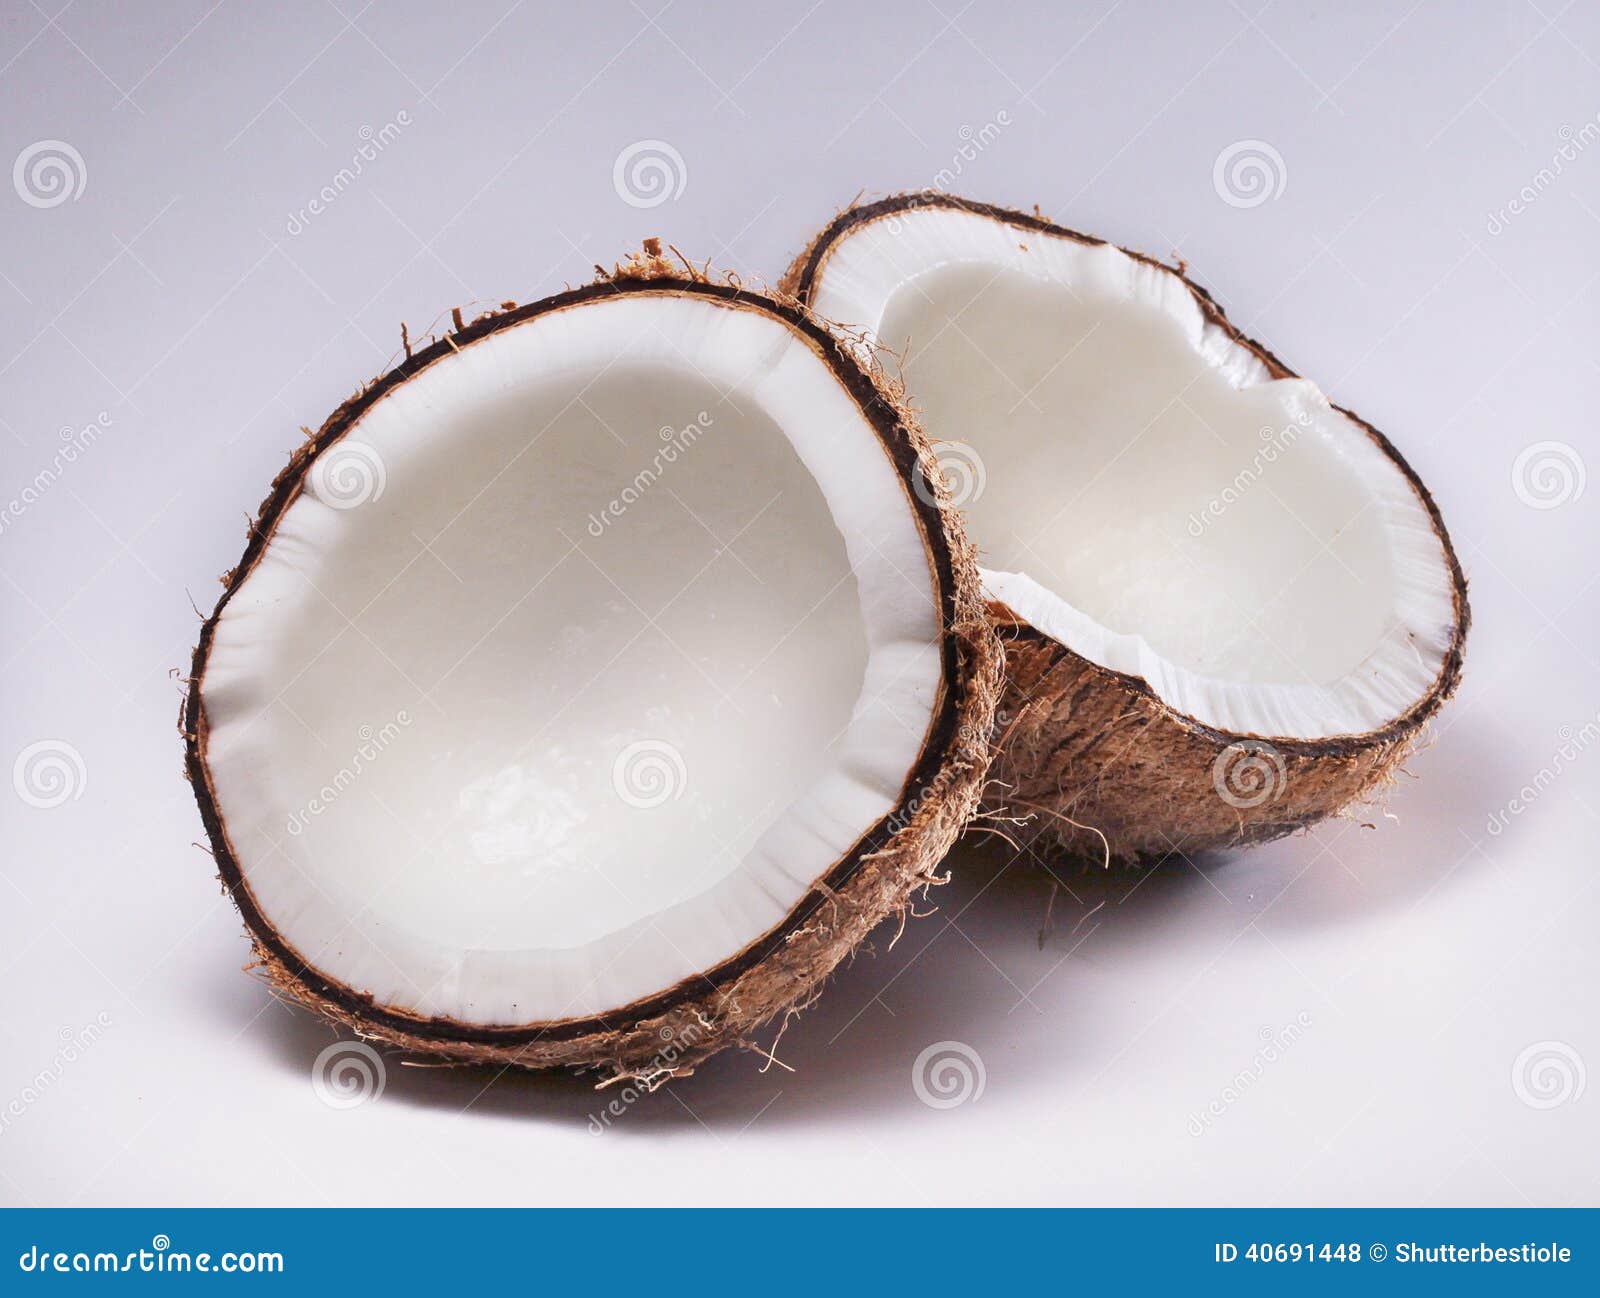 Coconut split in half stock photo. Image of food, fiber - 40691448